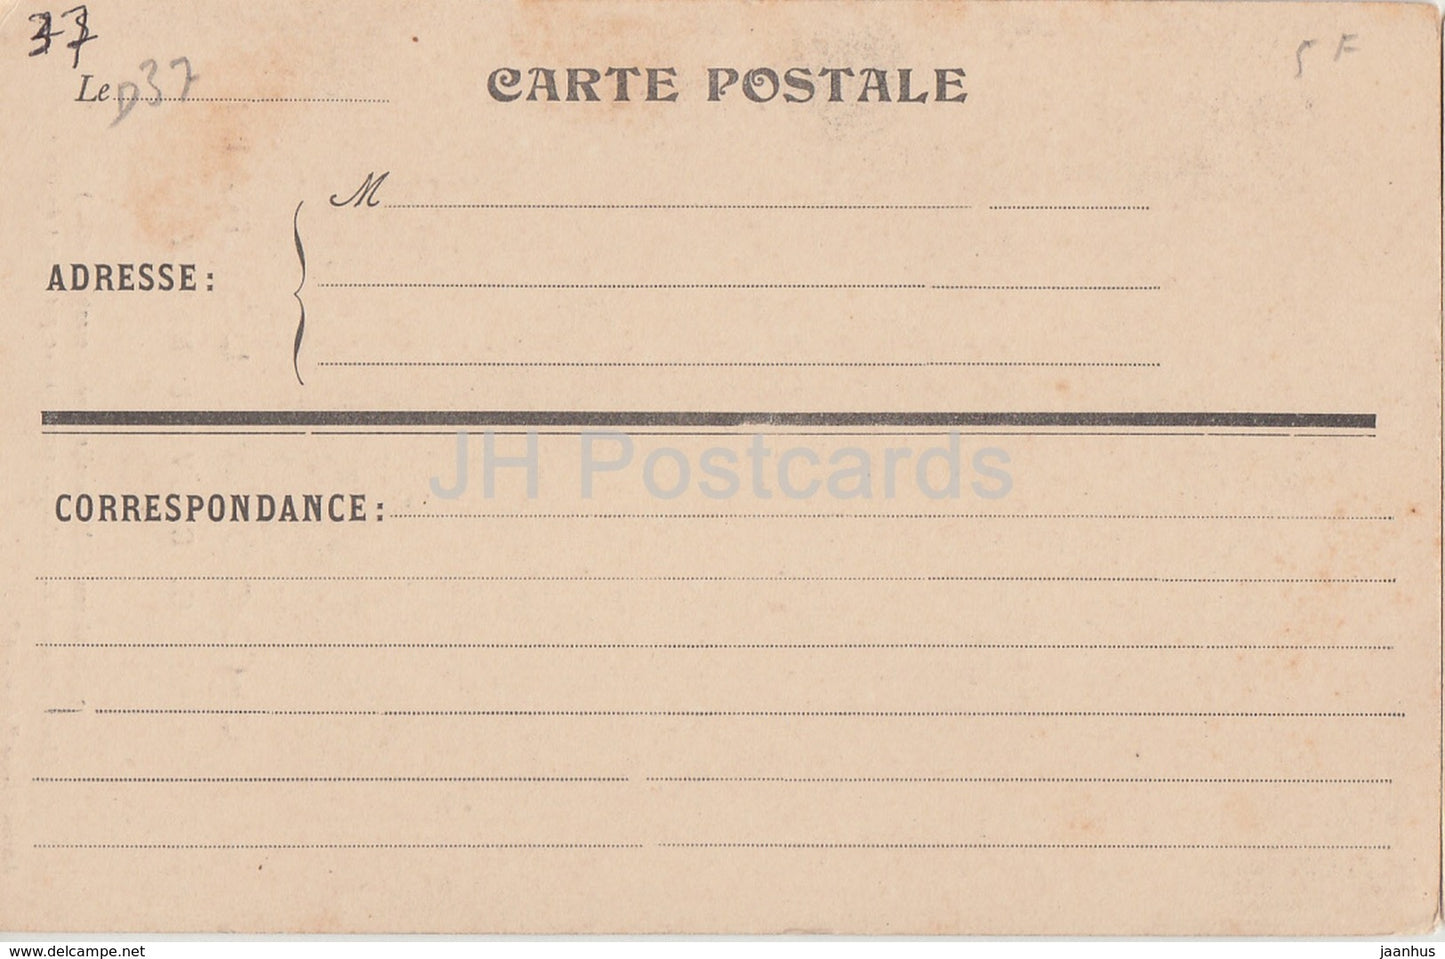 Chateau de Mollaville - pres Noizay - Cheminee de la Bibliotheque - Chocolat Lorrain - old postcard - France - unused